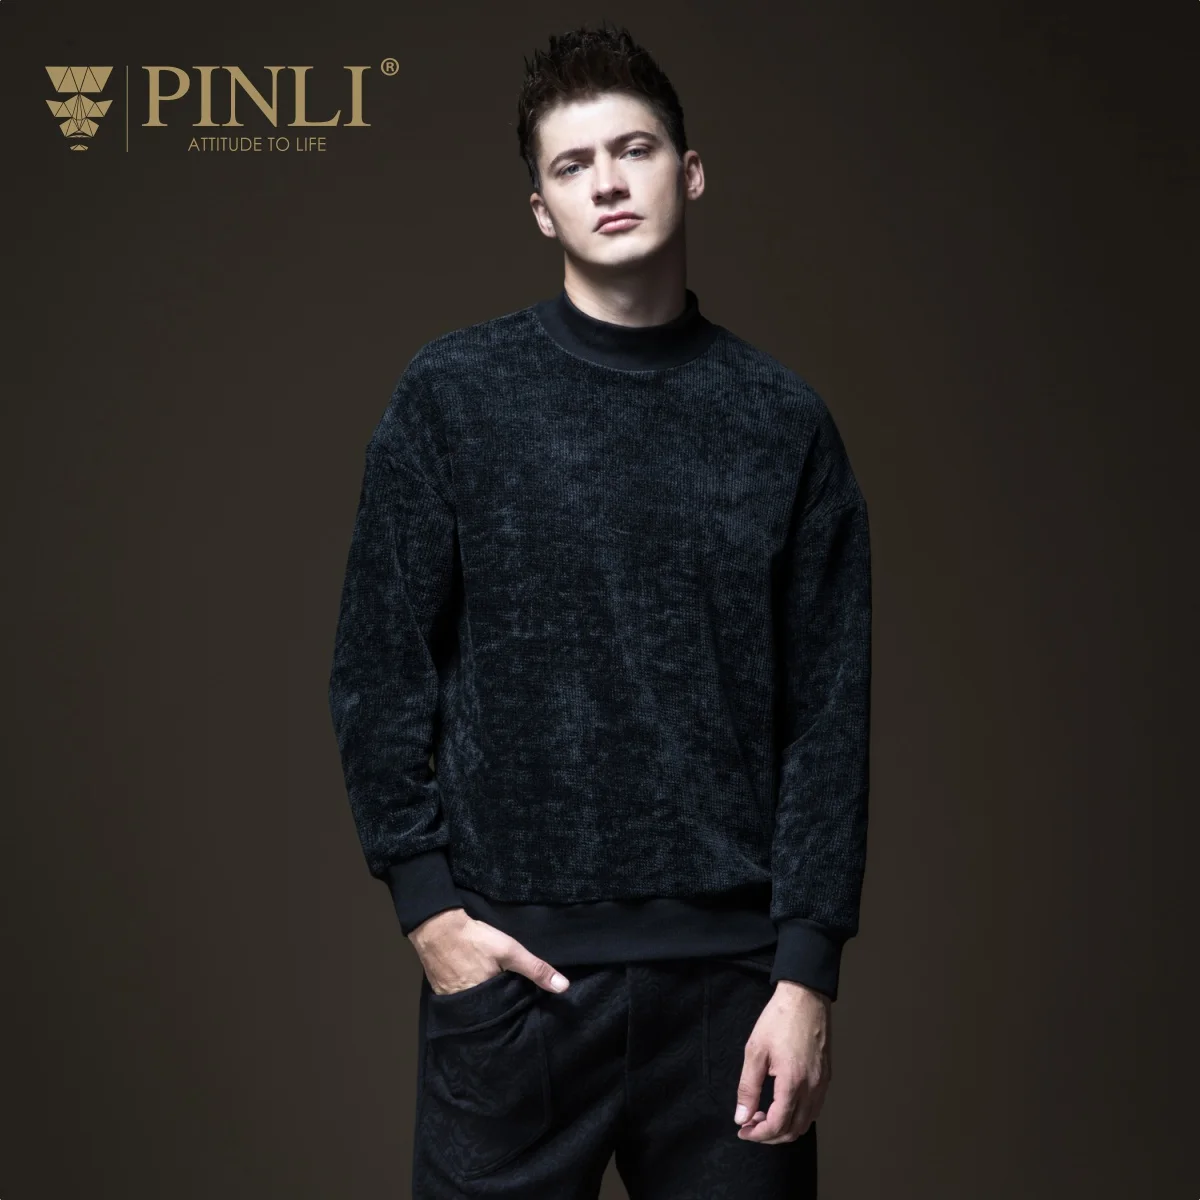 2019 Мужское пальто регулярные Pinli продукт сделал новые осенние мужская одежда свободные черепаха шеи свитер с высоким воротом B183510626